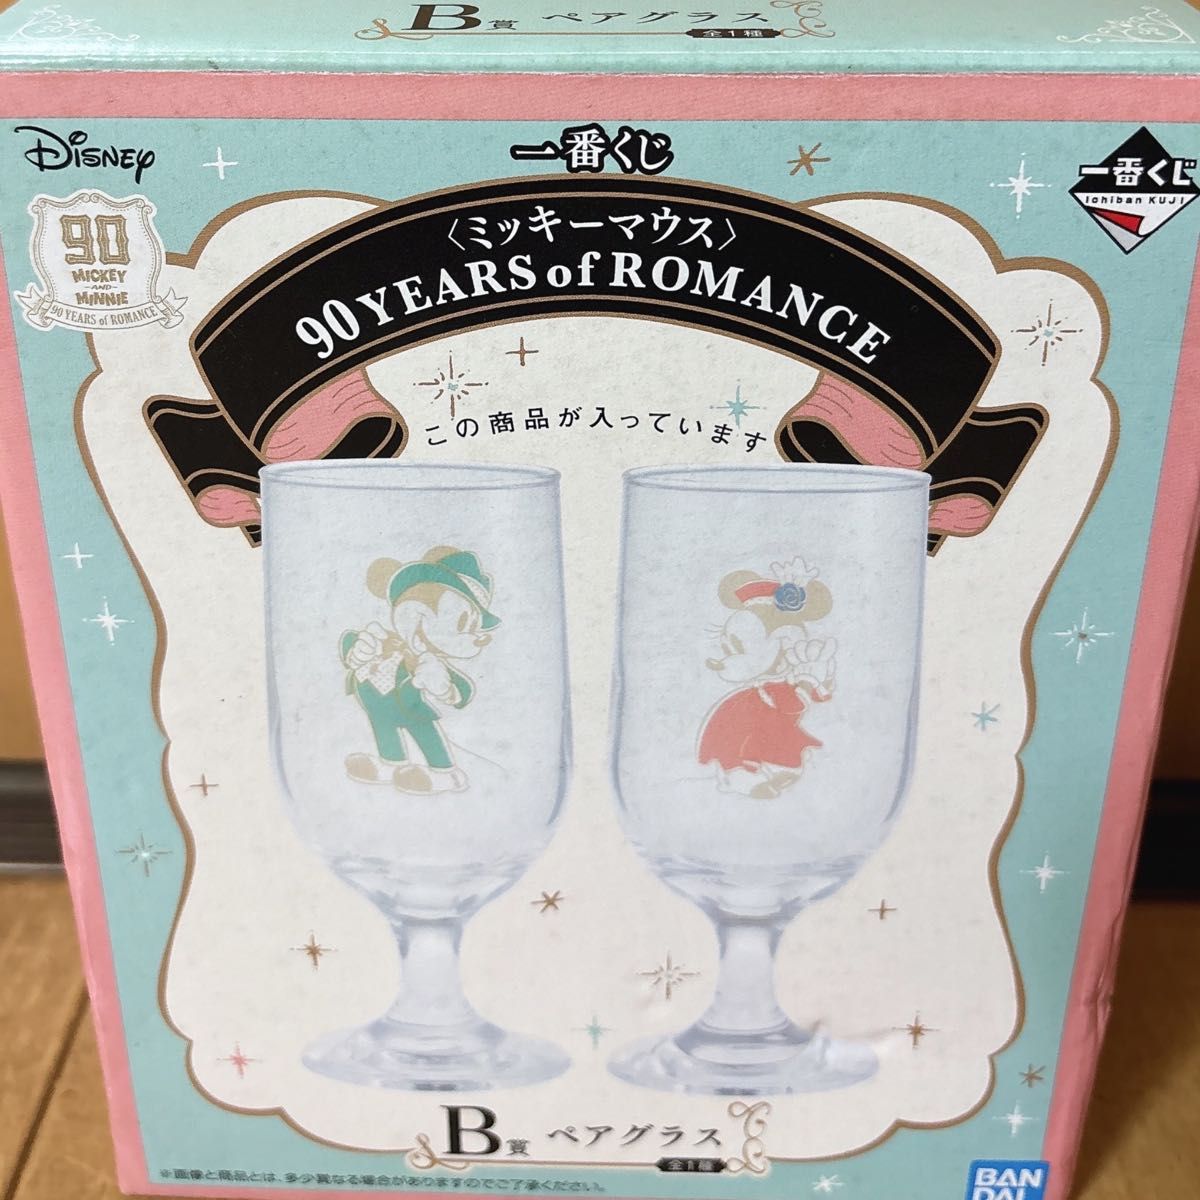 一番くじ  Disney  ミッキー&ミニー  B賞  ペアグラス  セット